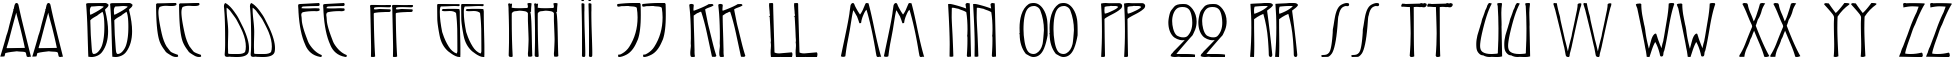 Пример написания английского алфавита шрифтом Reynold Art Deco